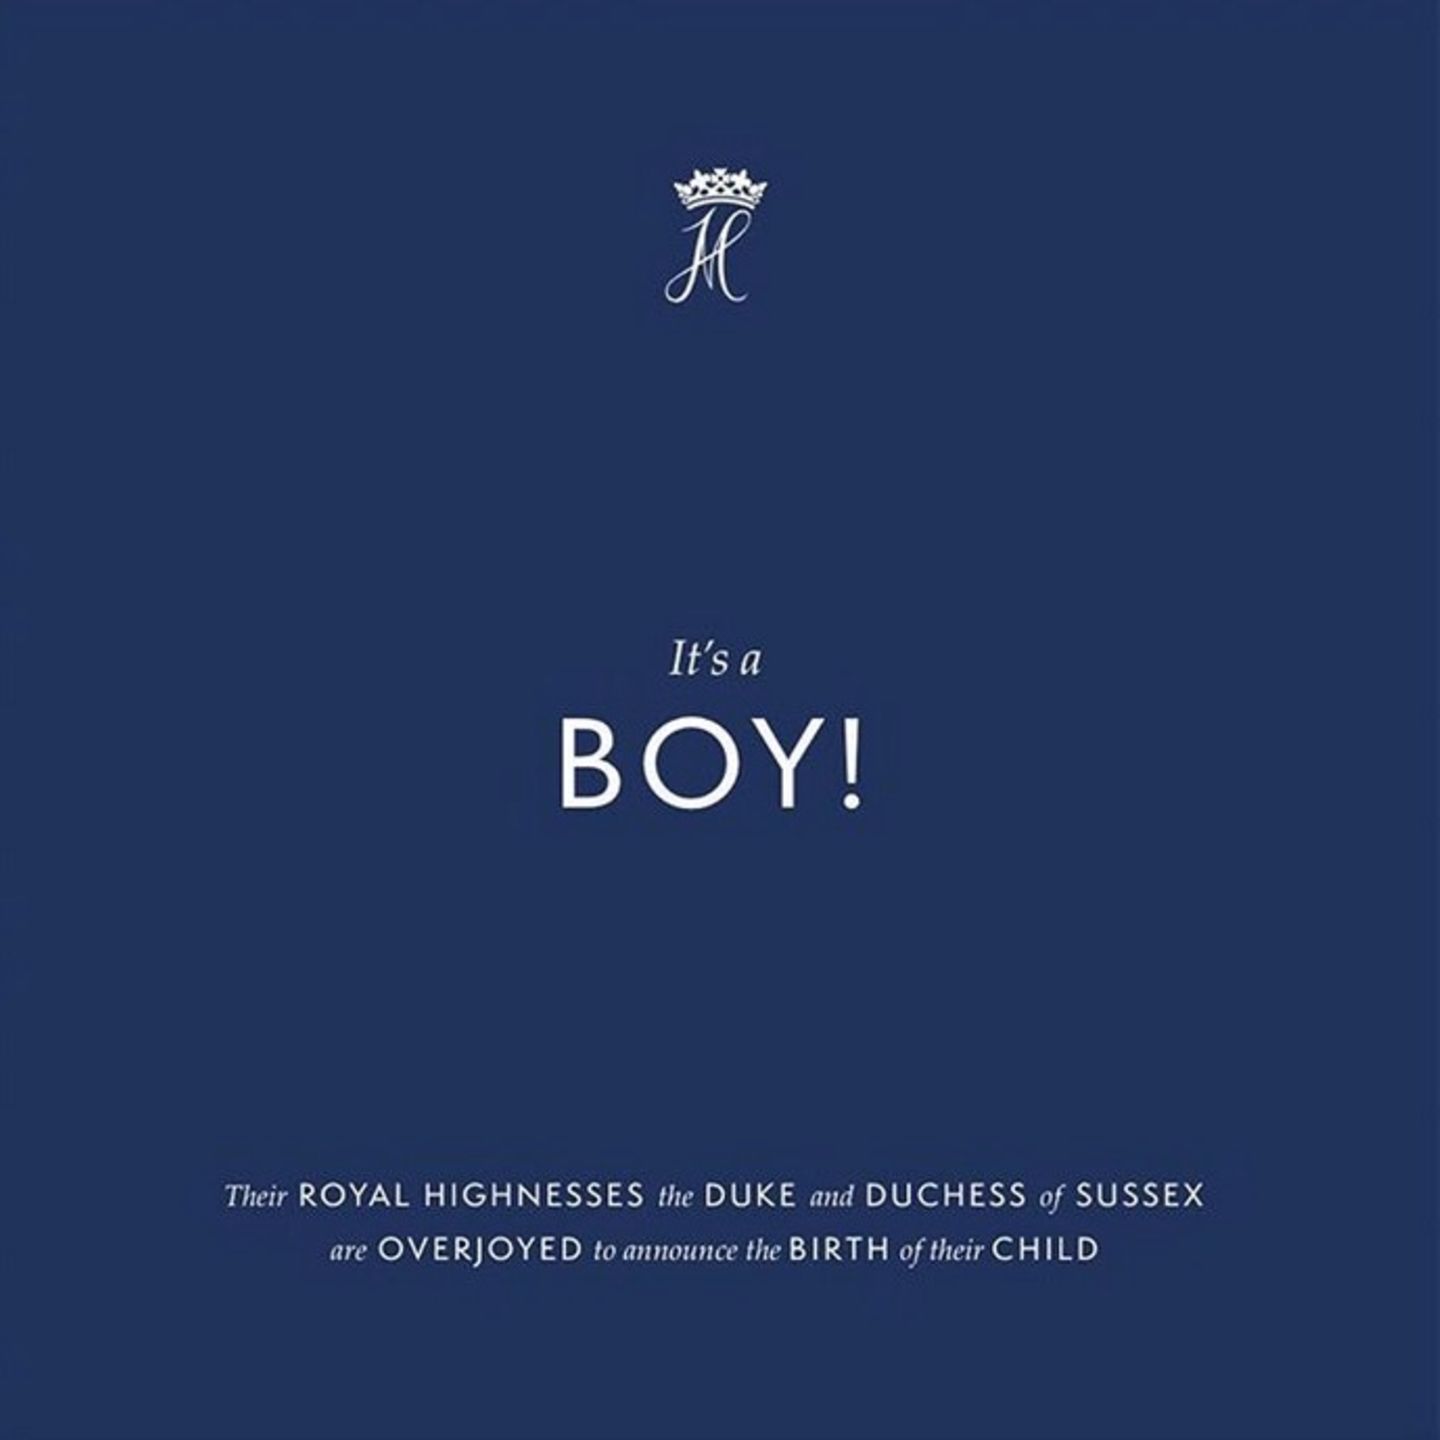 6. Mai 2019  Das Warten hat endlich ein Ende: Auf dem offiziellen Instagram-Account von Prinz Harry und Herzogin Meghan wird die Geburt ihres ersten Kindes verkündet. Es ist ein Junge, der bei seiner Geburt 3260 Gramm gewogen hat. 